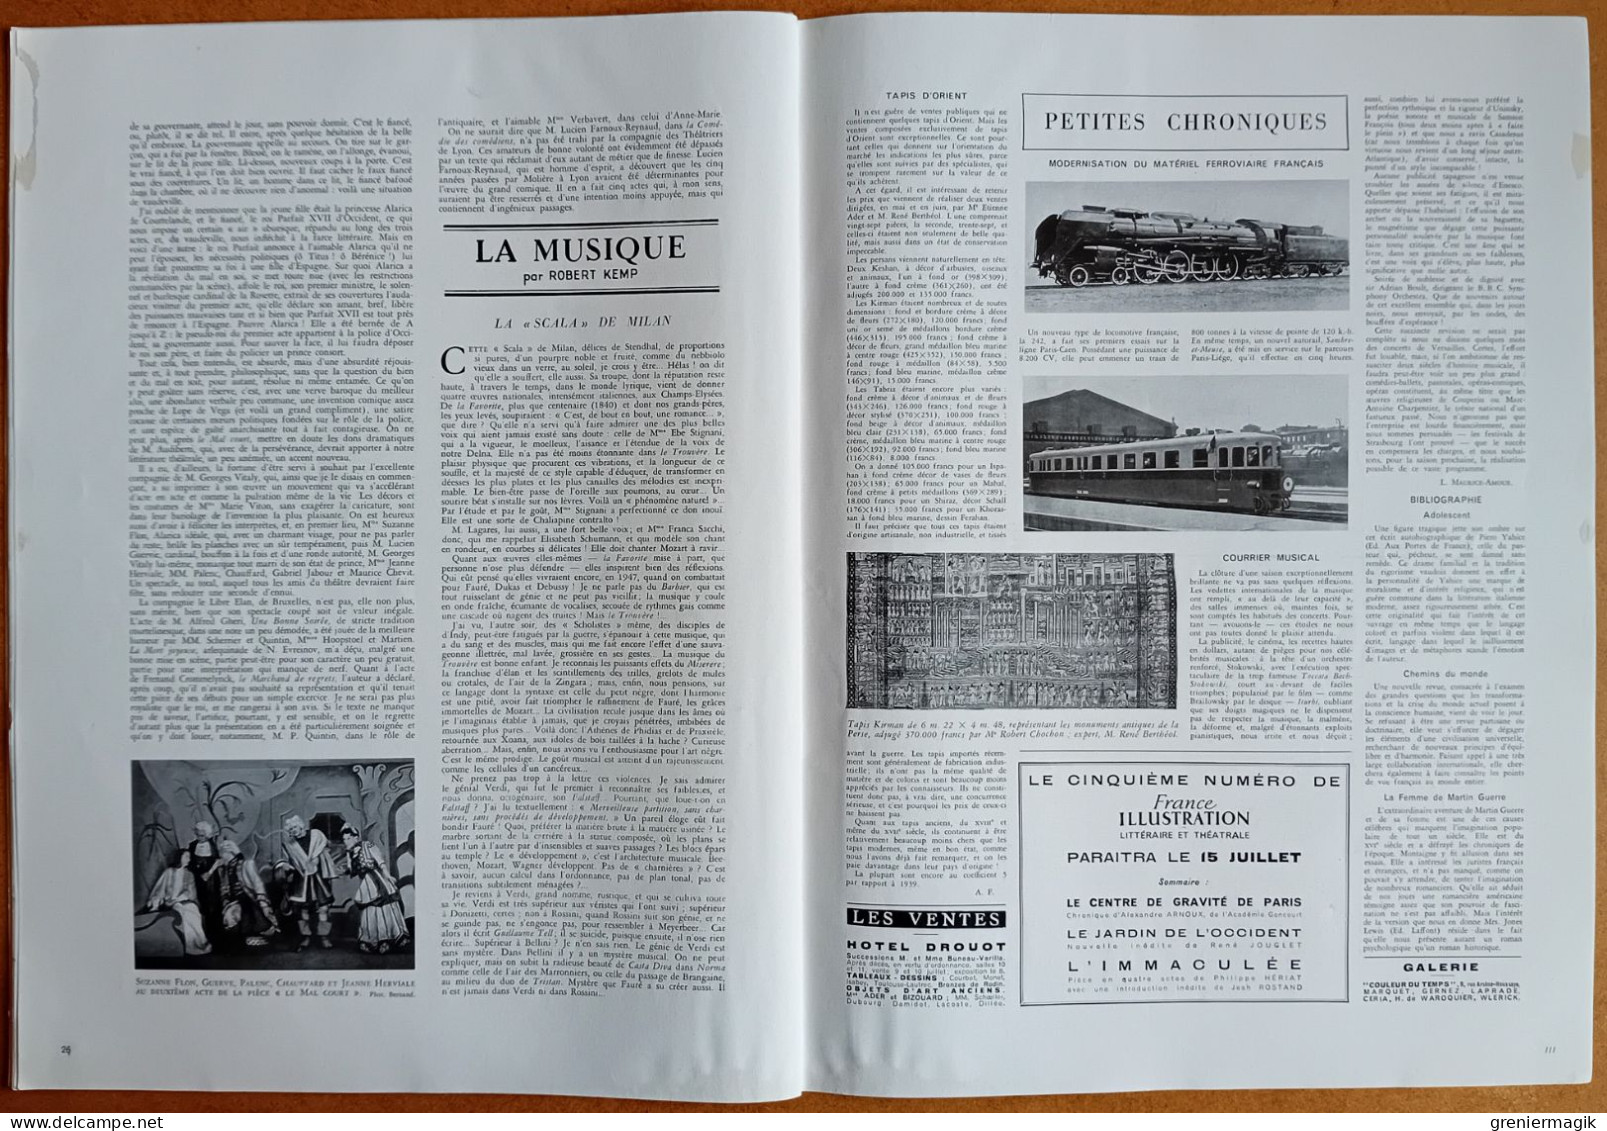 France Illustration N°92 05/07/1947 Tour de France/Palestine/Les derniers combats sur la Ligne Maginot/Marcq-en-Baroeul